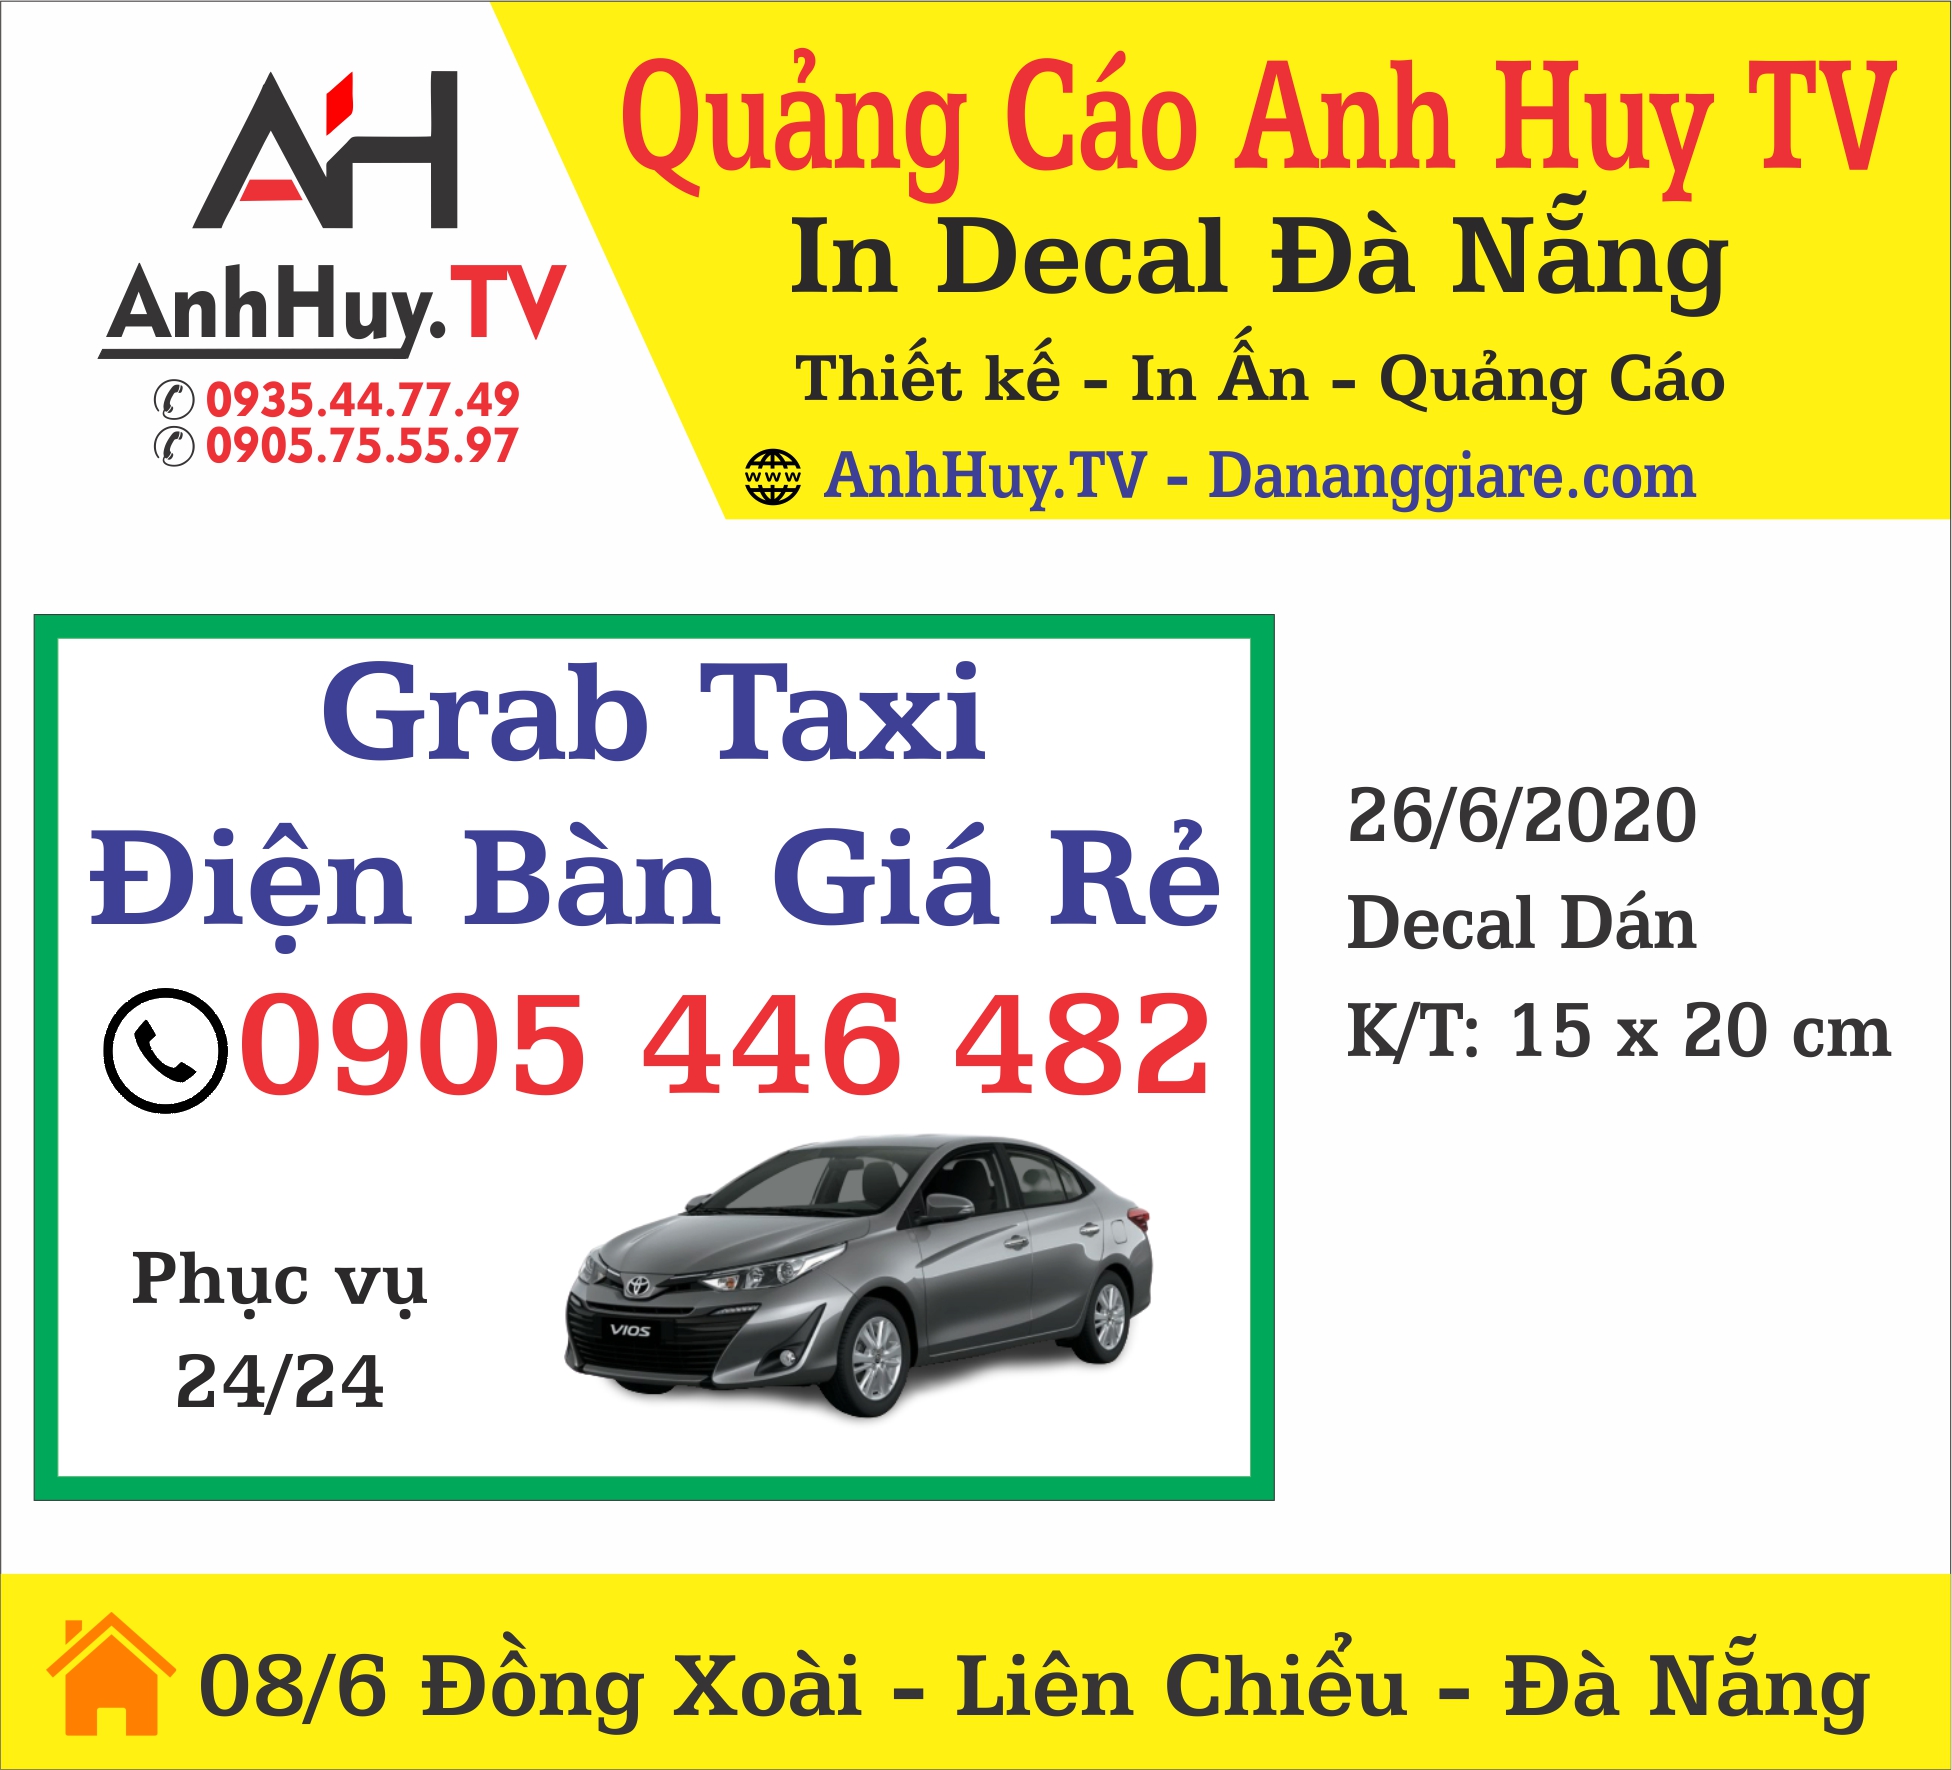 In Decal Tem Dán Grap Taxi Điện Bàn Giá Rẻ In Quảng Cáo Anh Huy TV